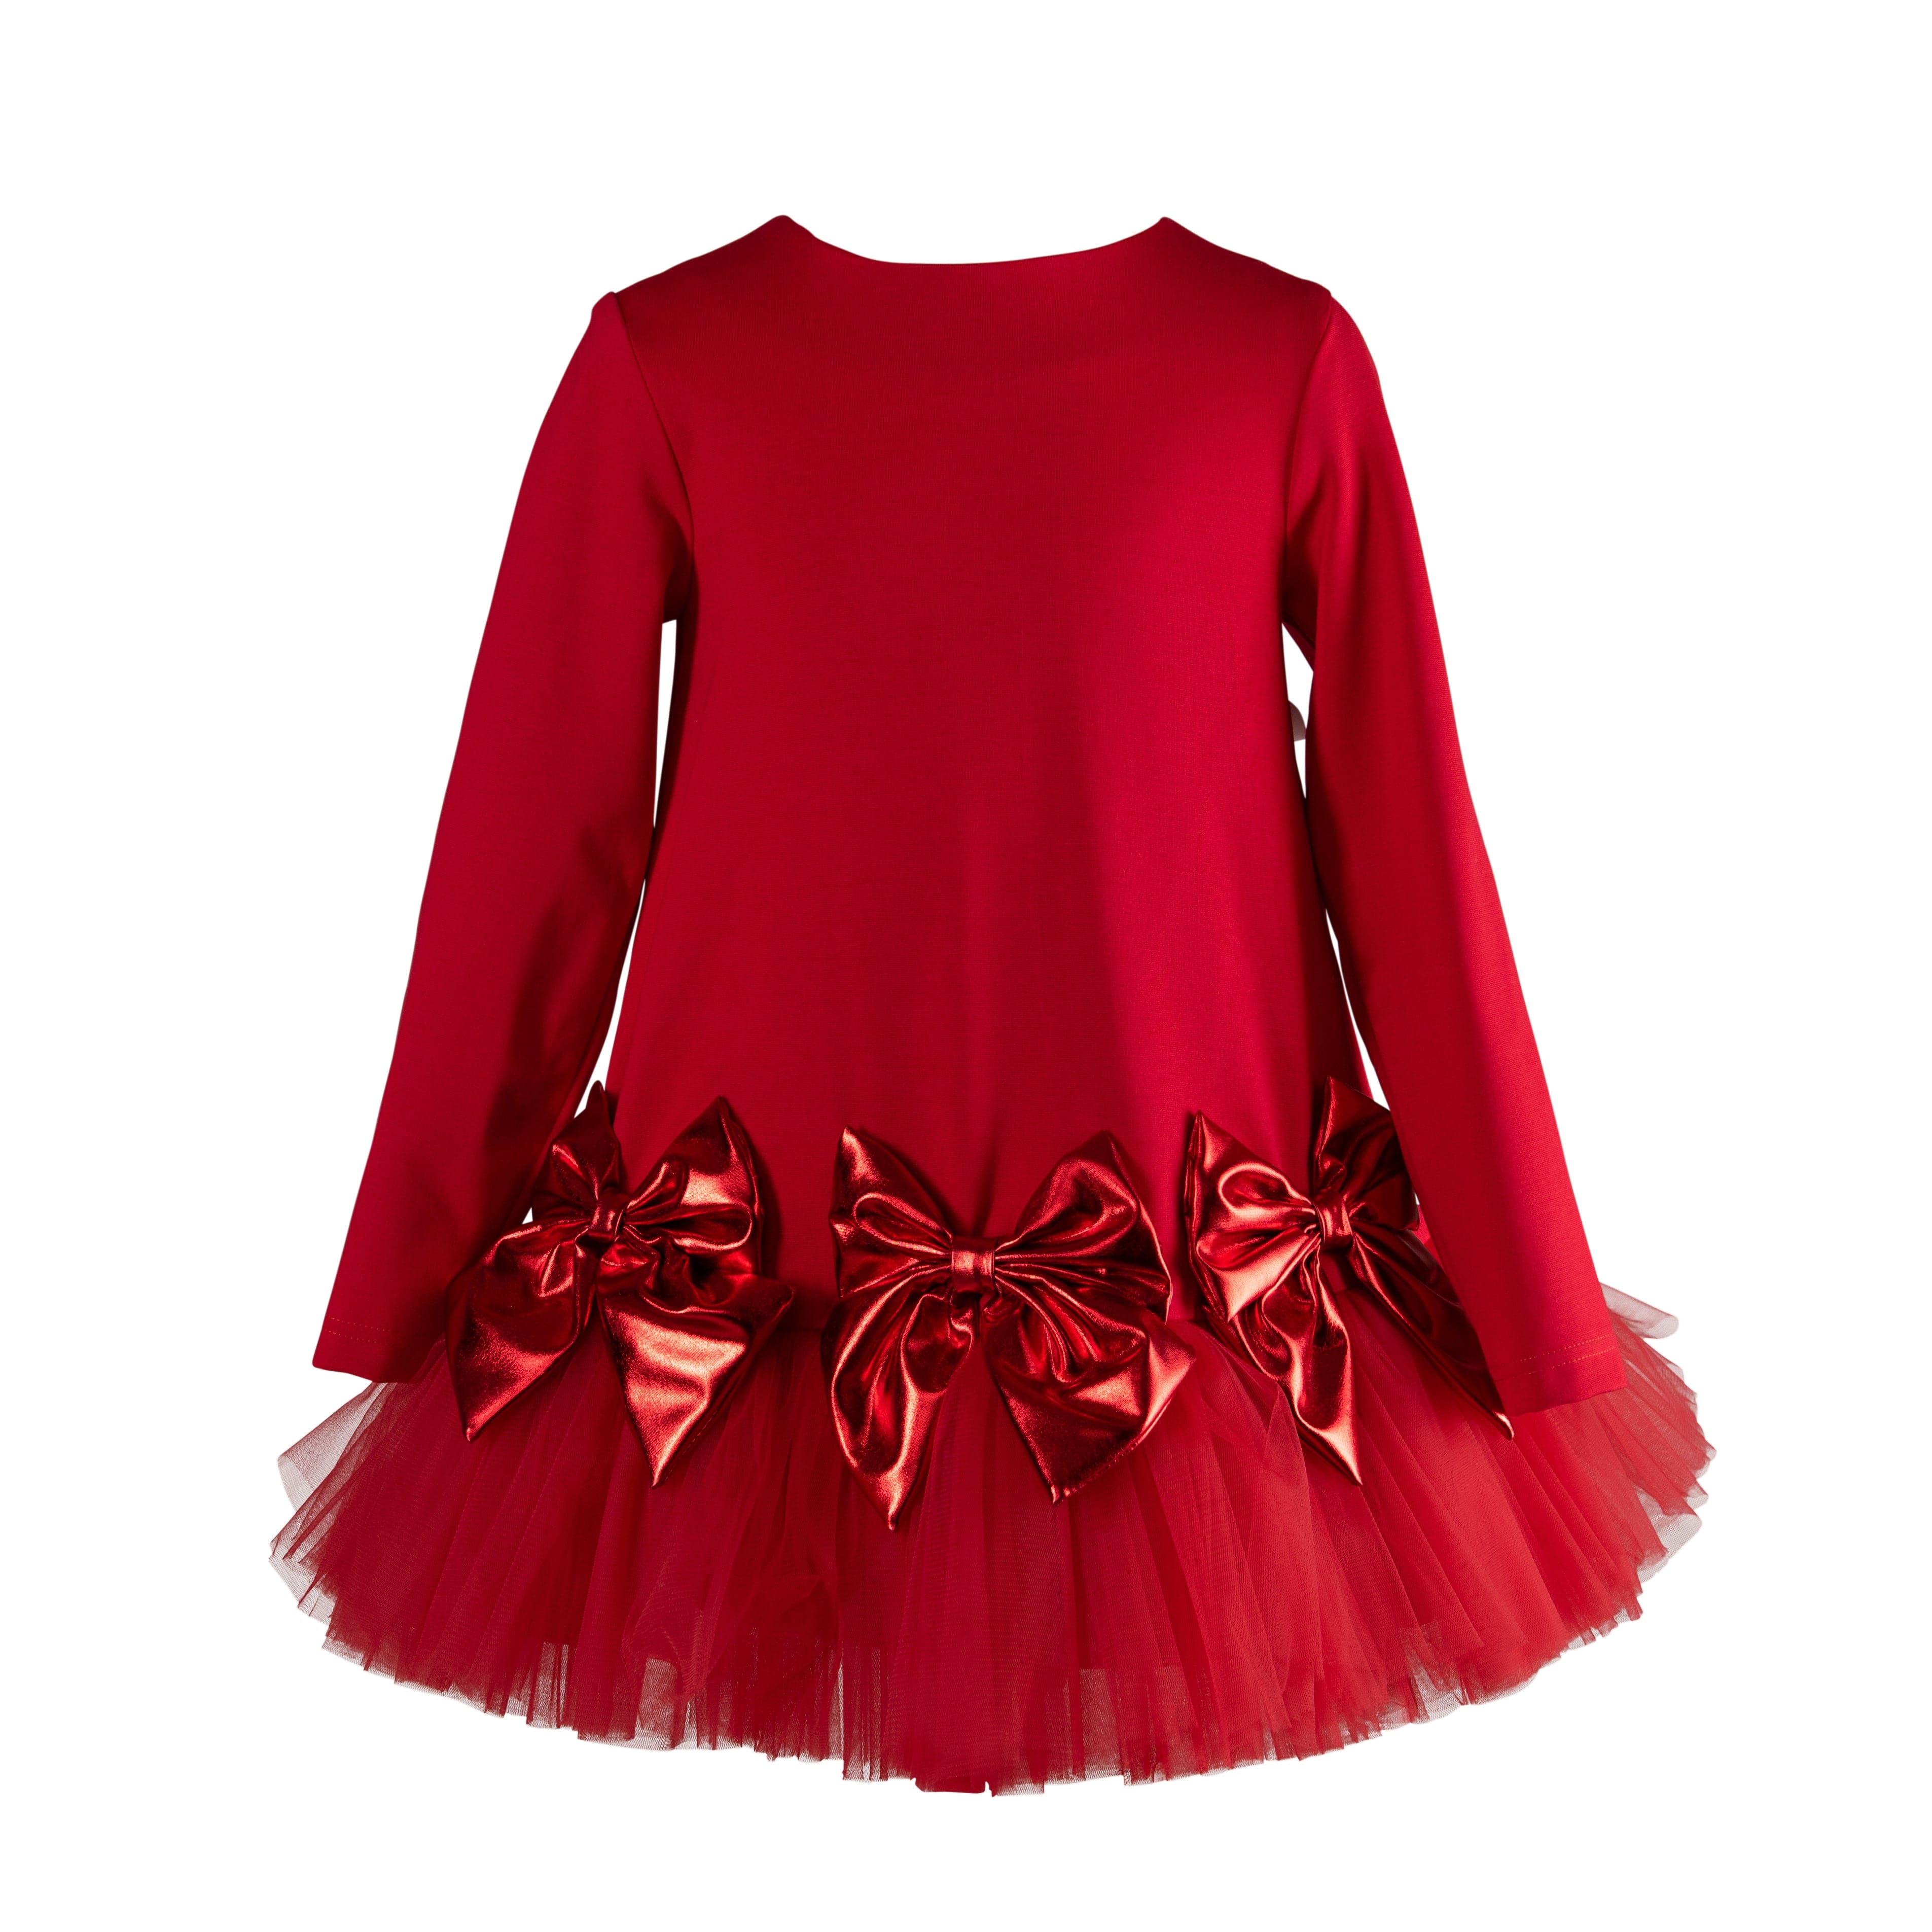 Daga - Follow My Heart Bow Tutu Dress - Red